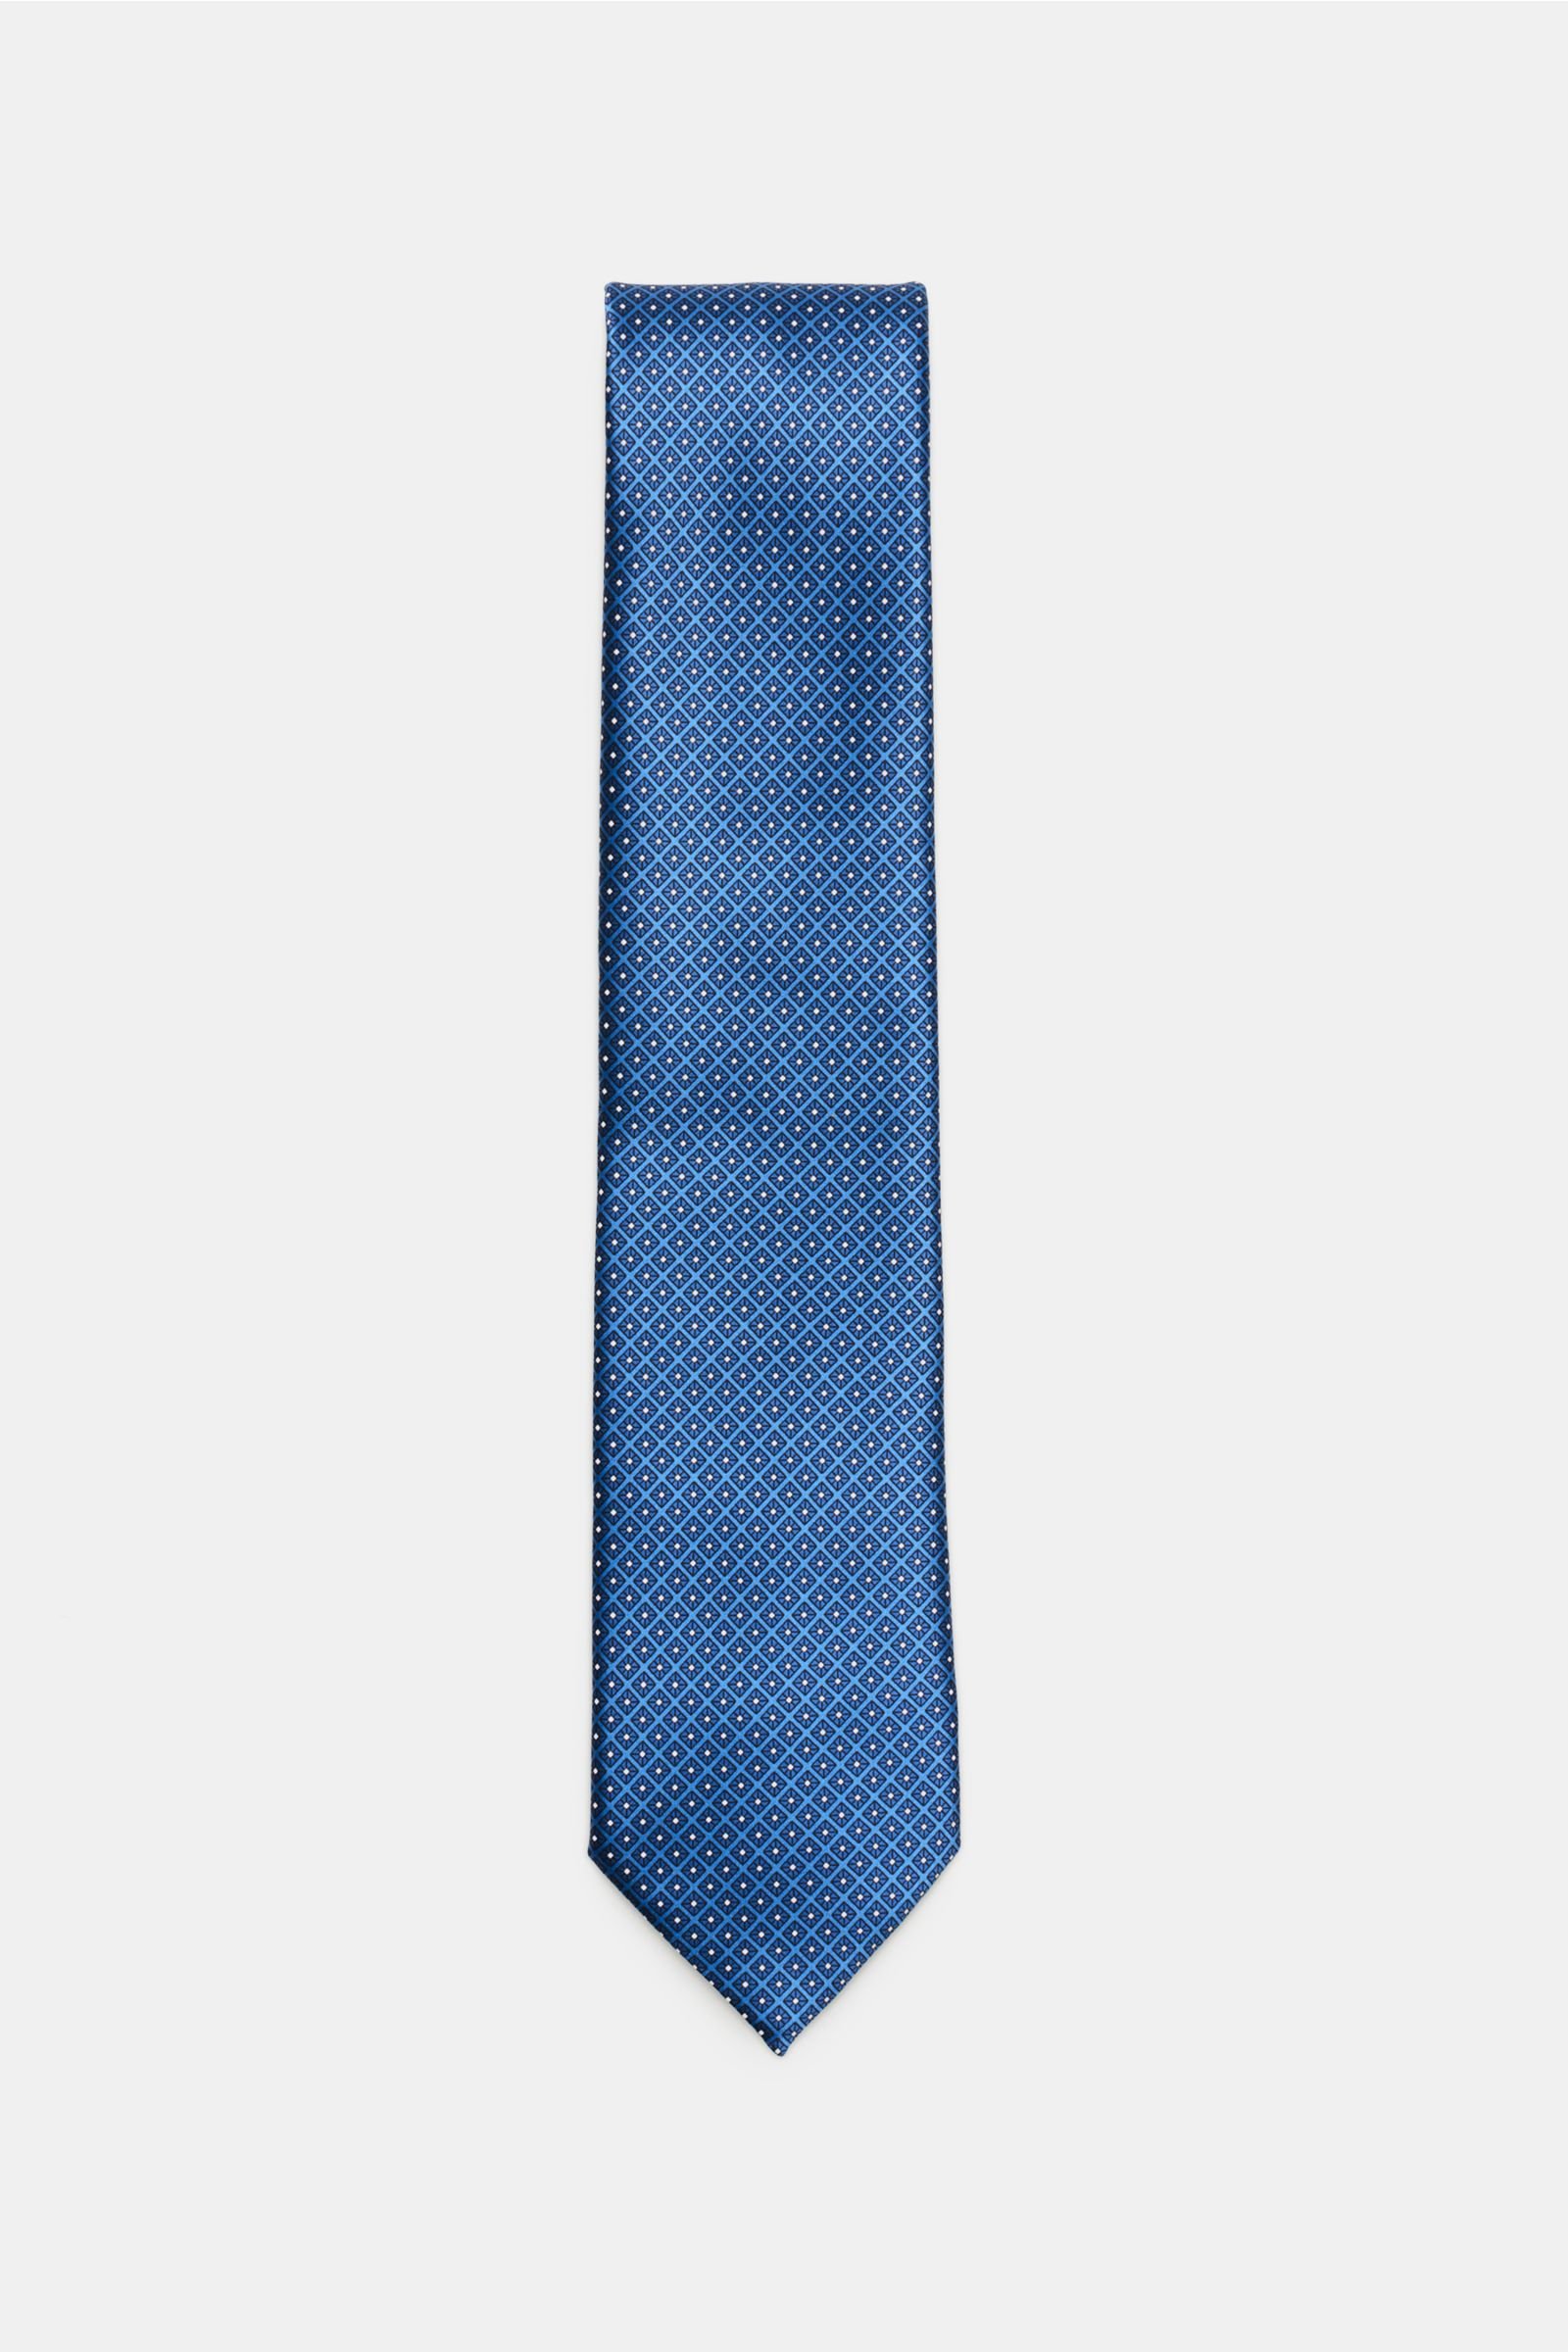 Silk tie blue patterned